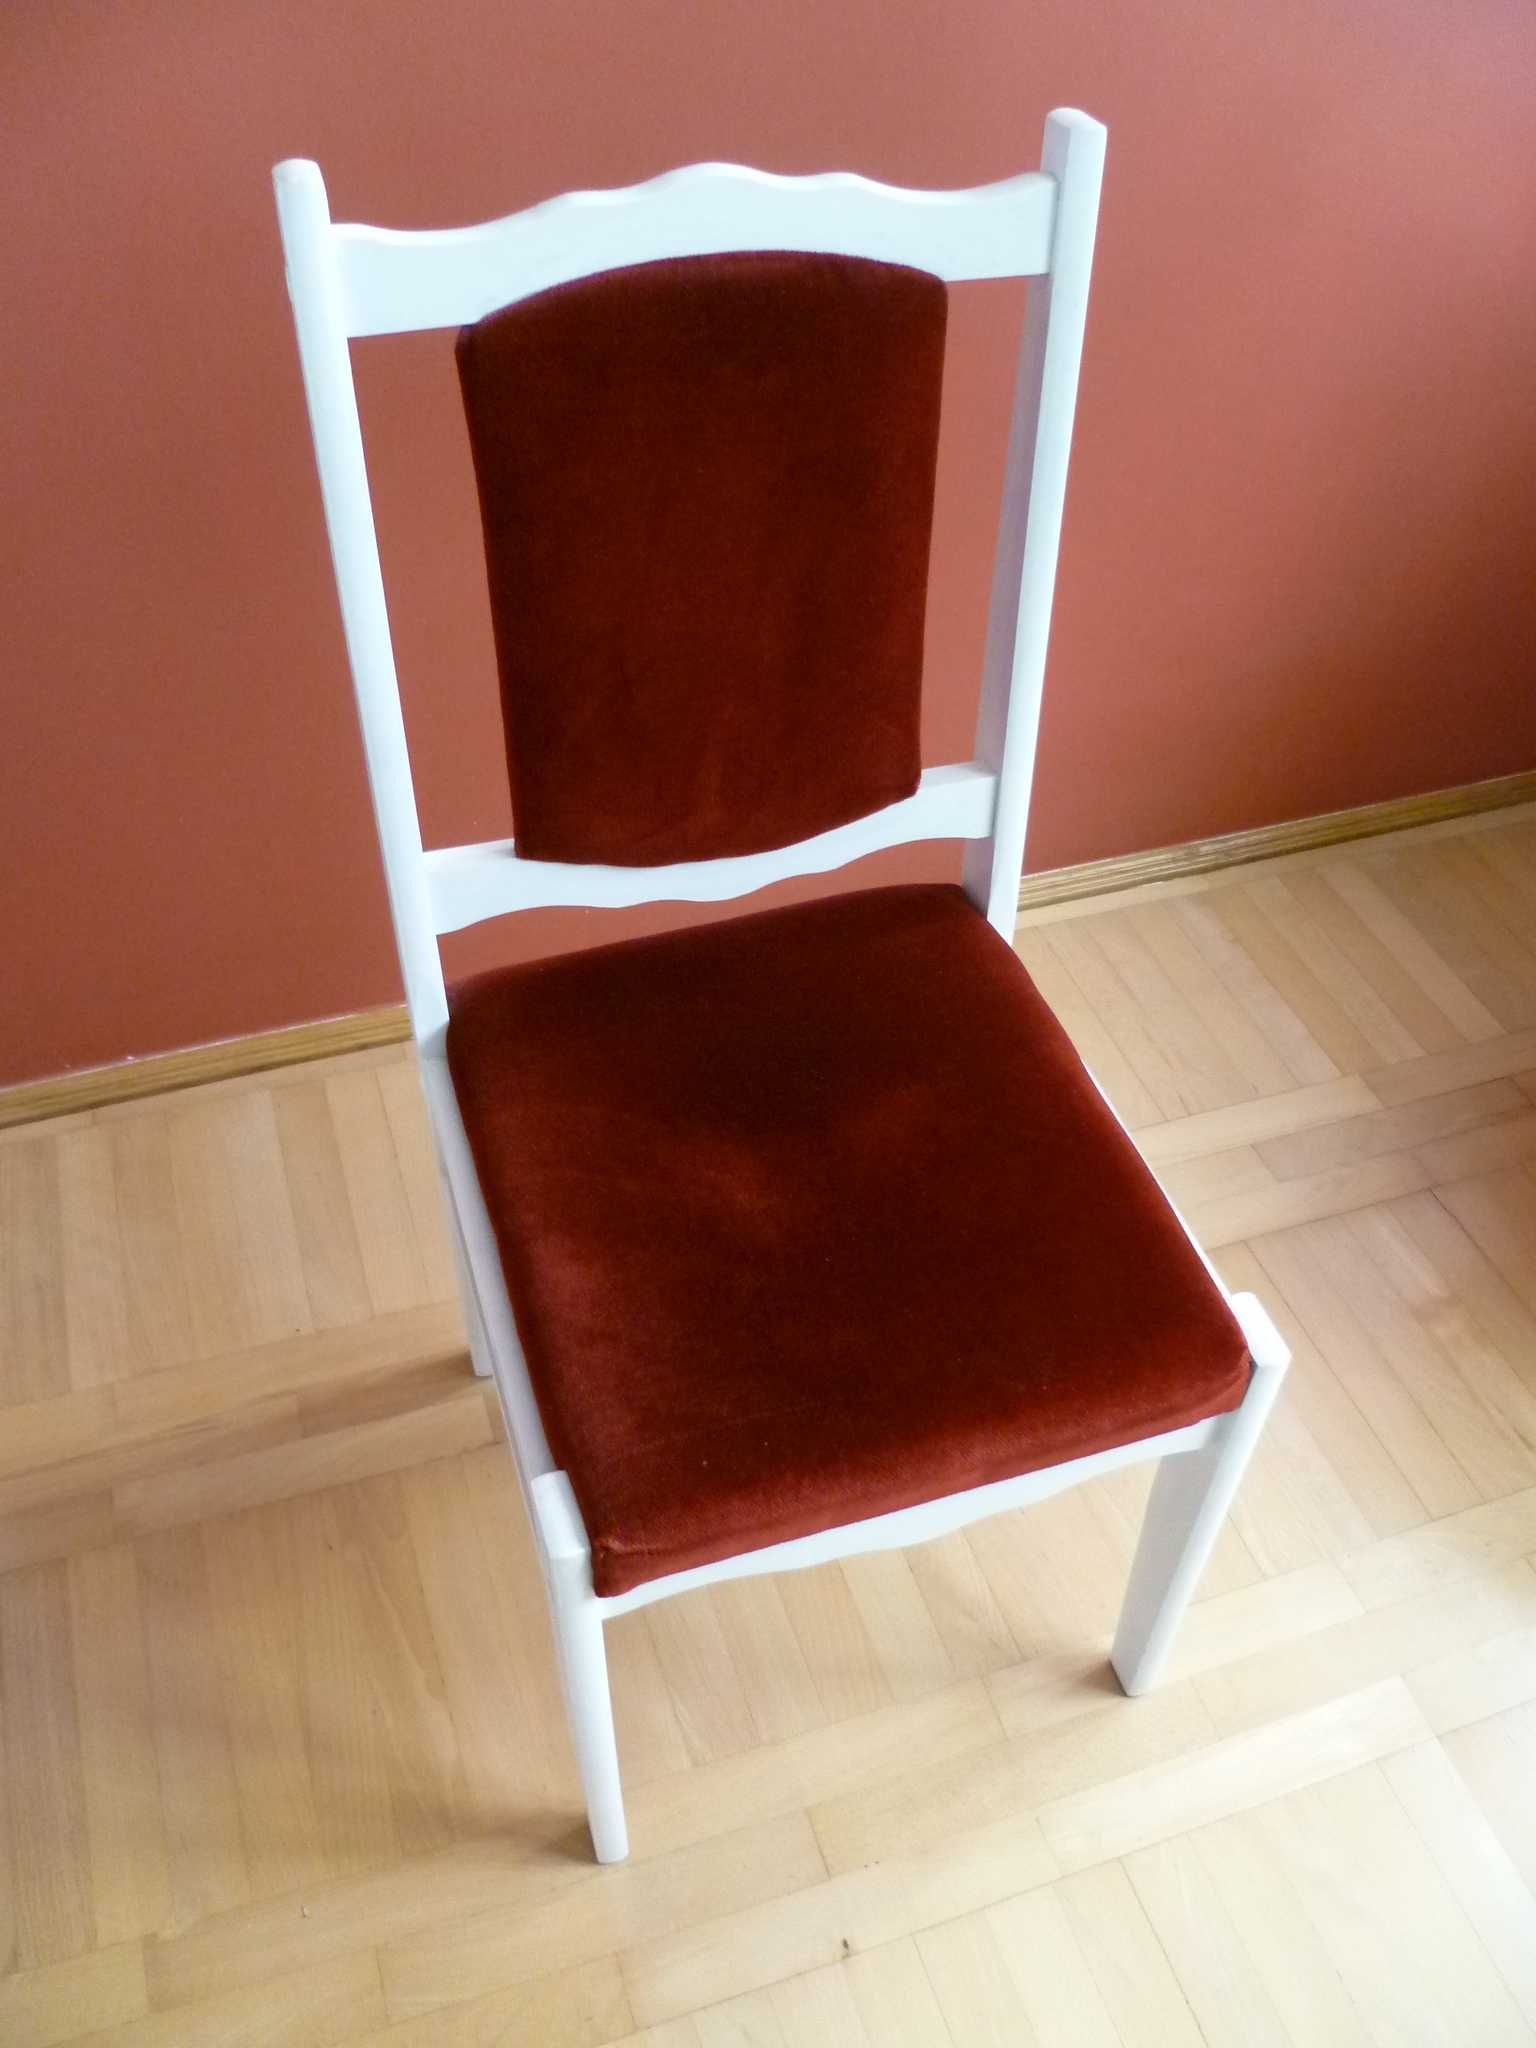 Krzesła - do sprzedania 4 sztuki